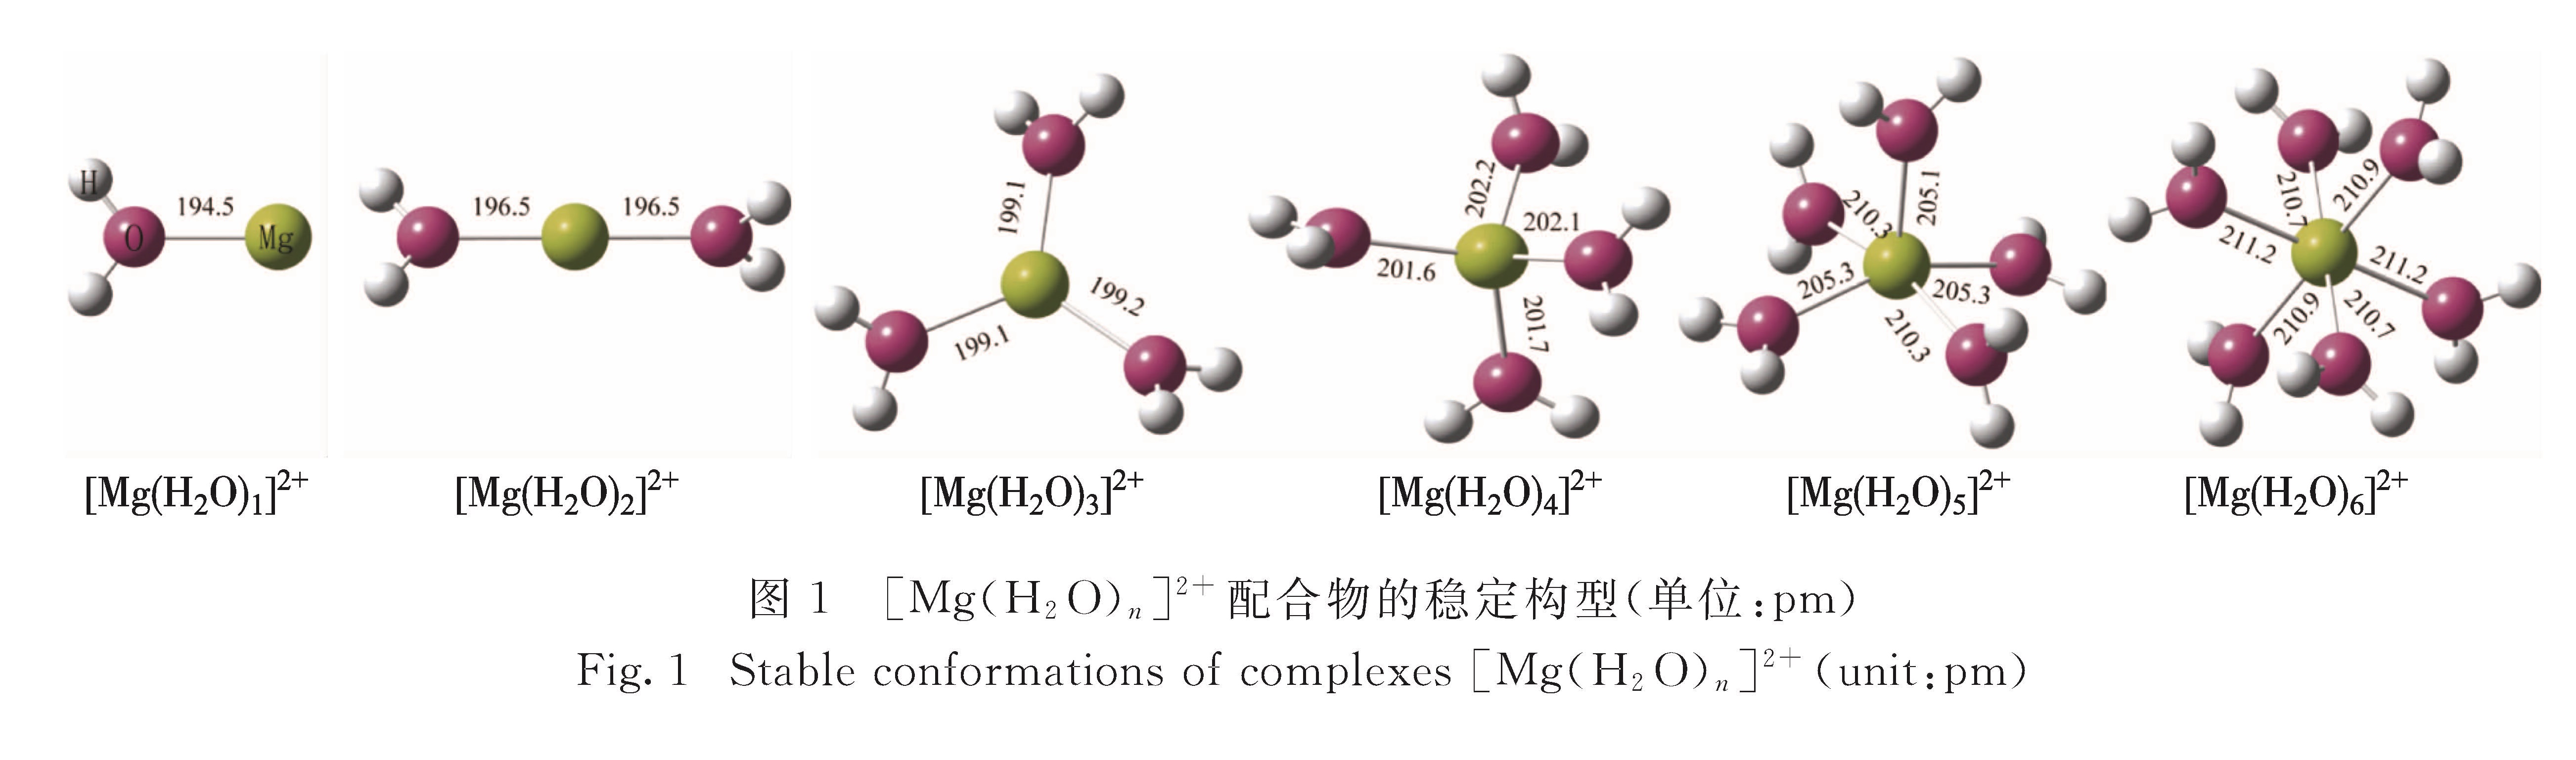 图1 [Mg(H2O)n]2+配合物的稳定构型(单位:pm)<br/>Fig.1 Stable conformations of complexes [Mg(H2O)n]2+(unit:pm)